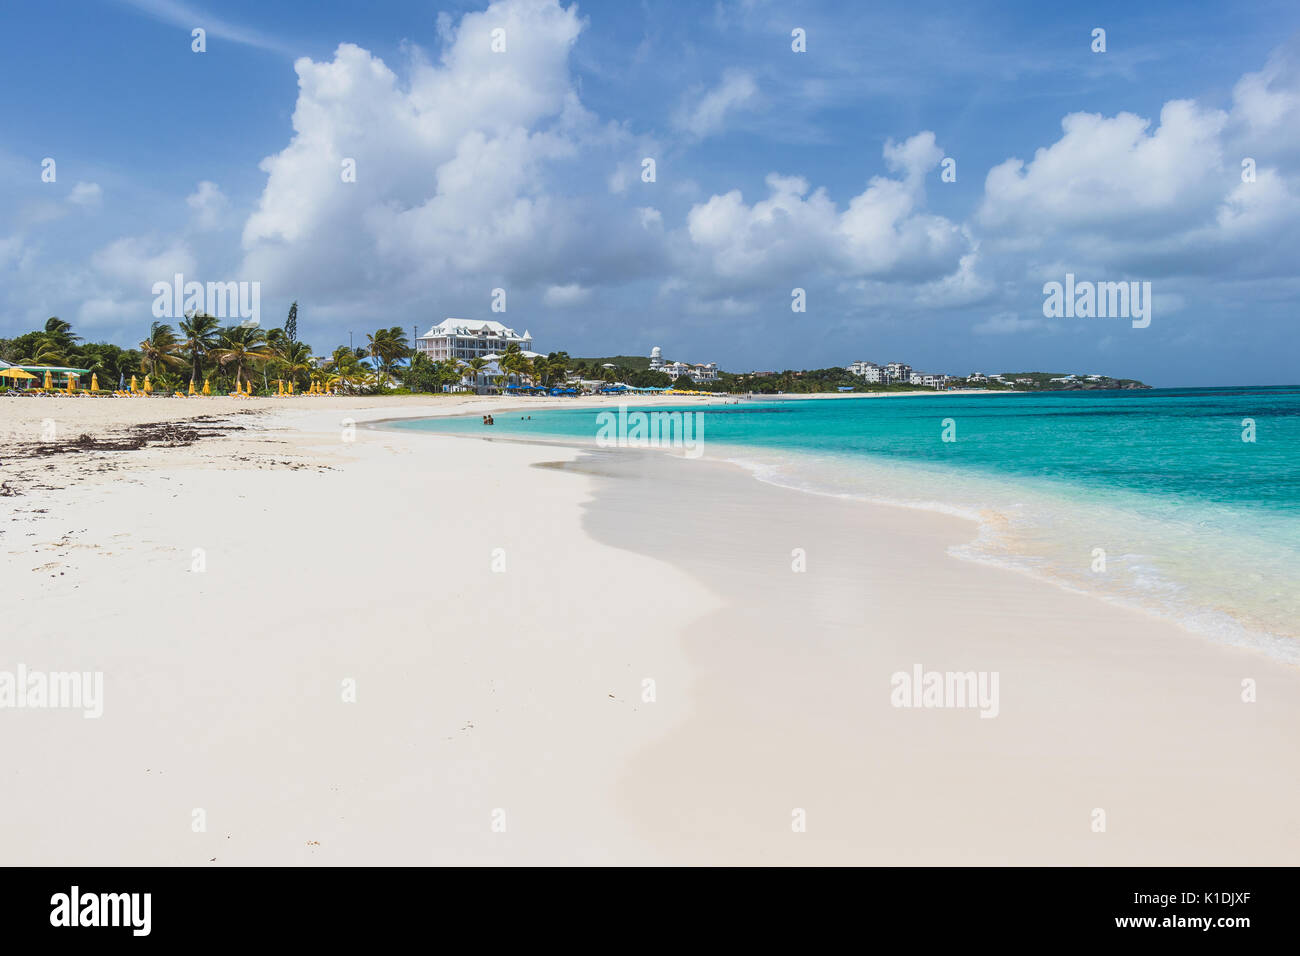 Plage de Shoal Bay à Anguilla. Régulièrement classé comme l'un des plus belles plages dans le monde. Banque D'Images